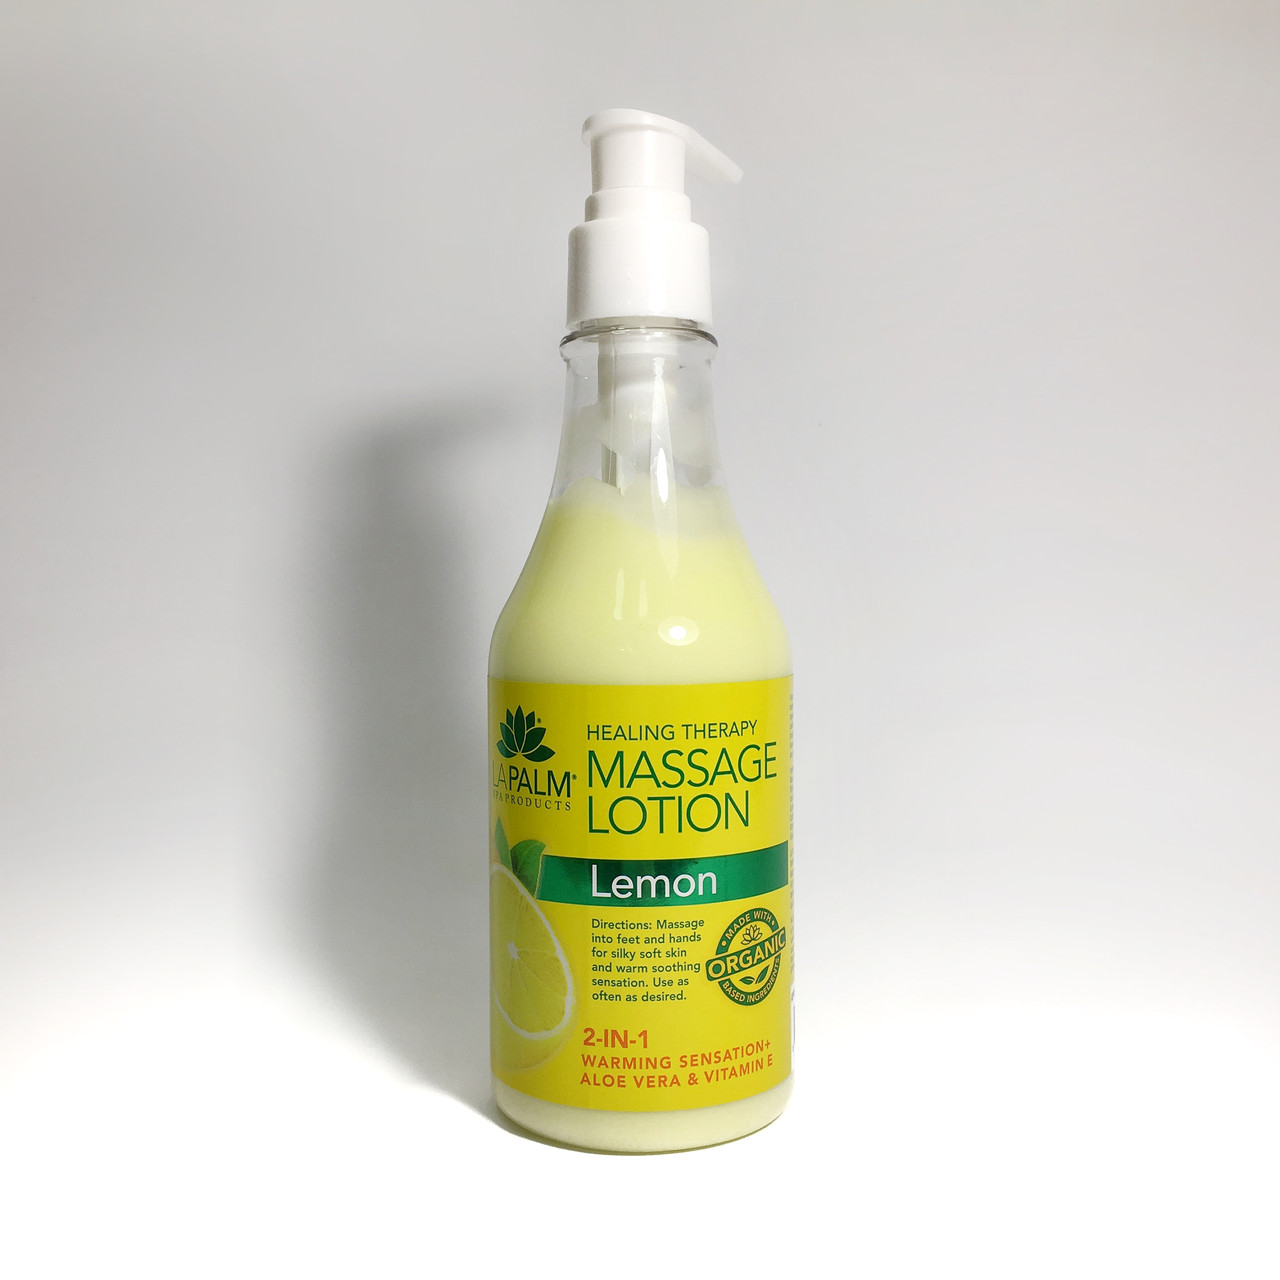 LA PALM Healing Therapy Lotion Lemon Терапевтичний лосьйон для рук і ніг Лимон 236 мл